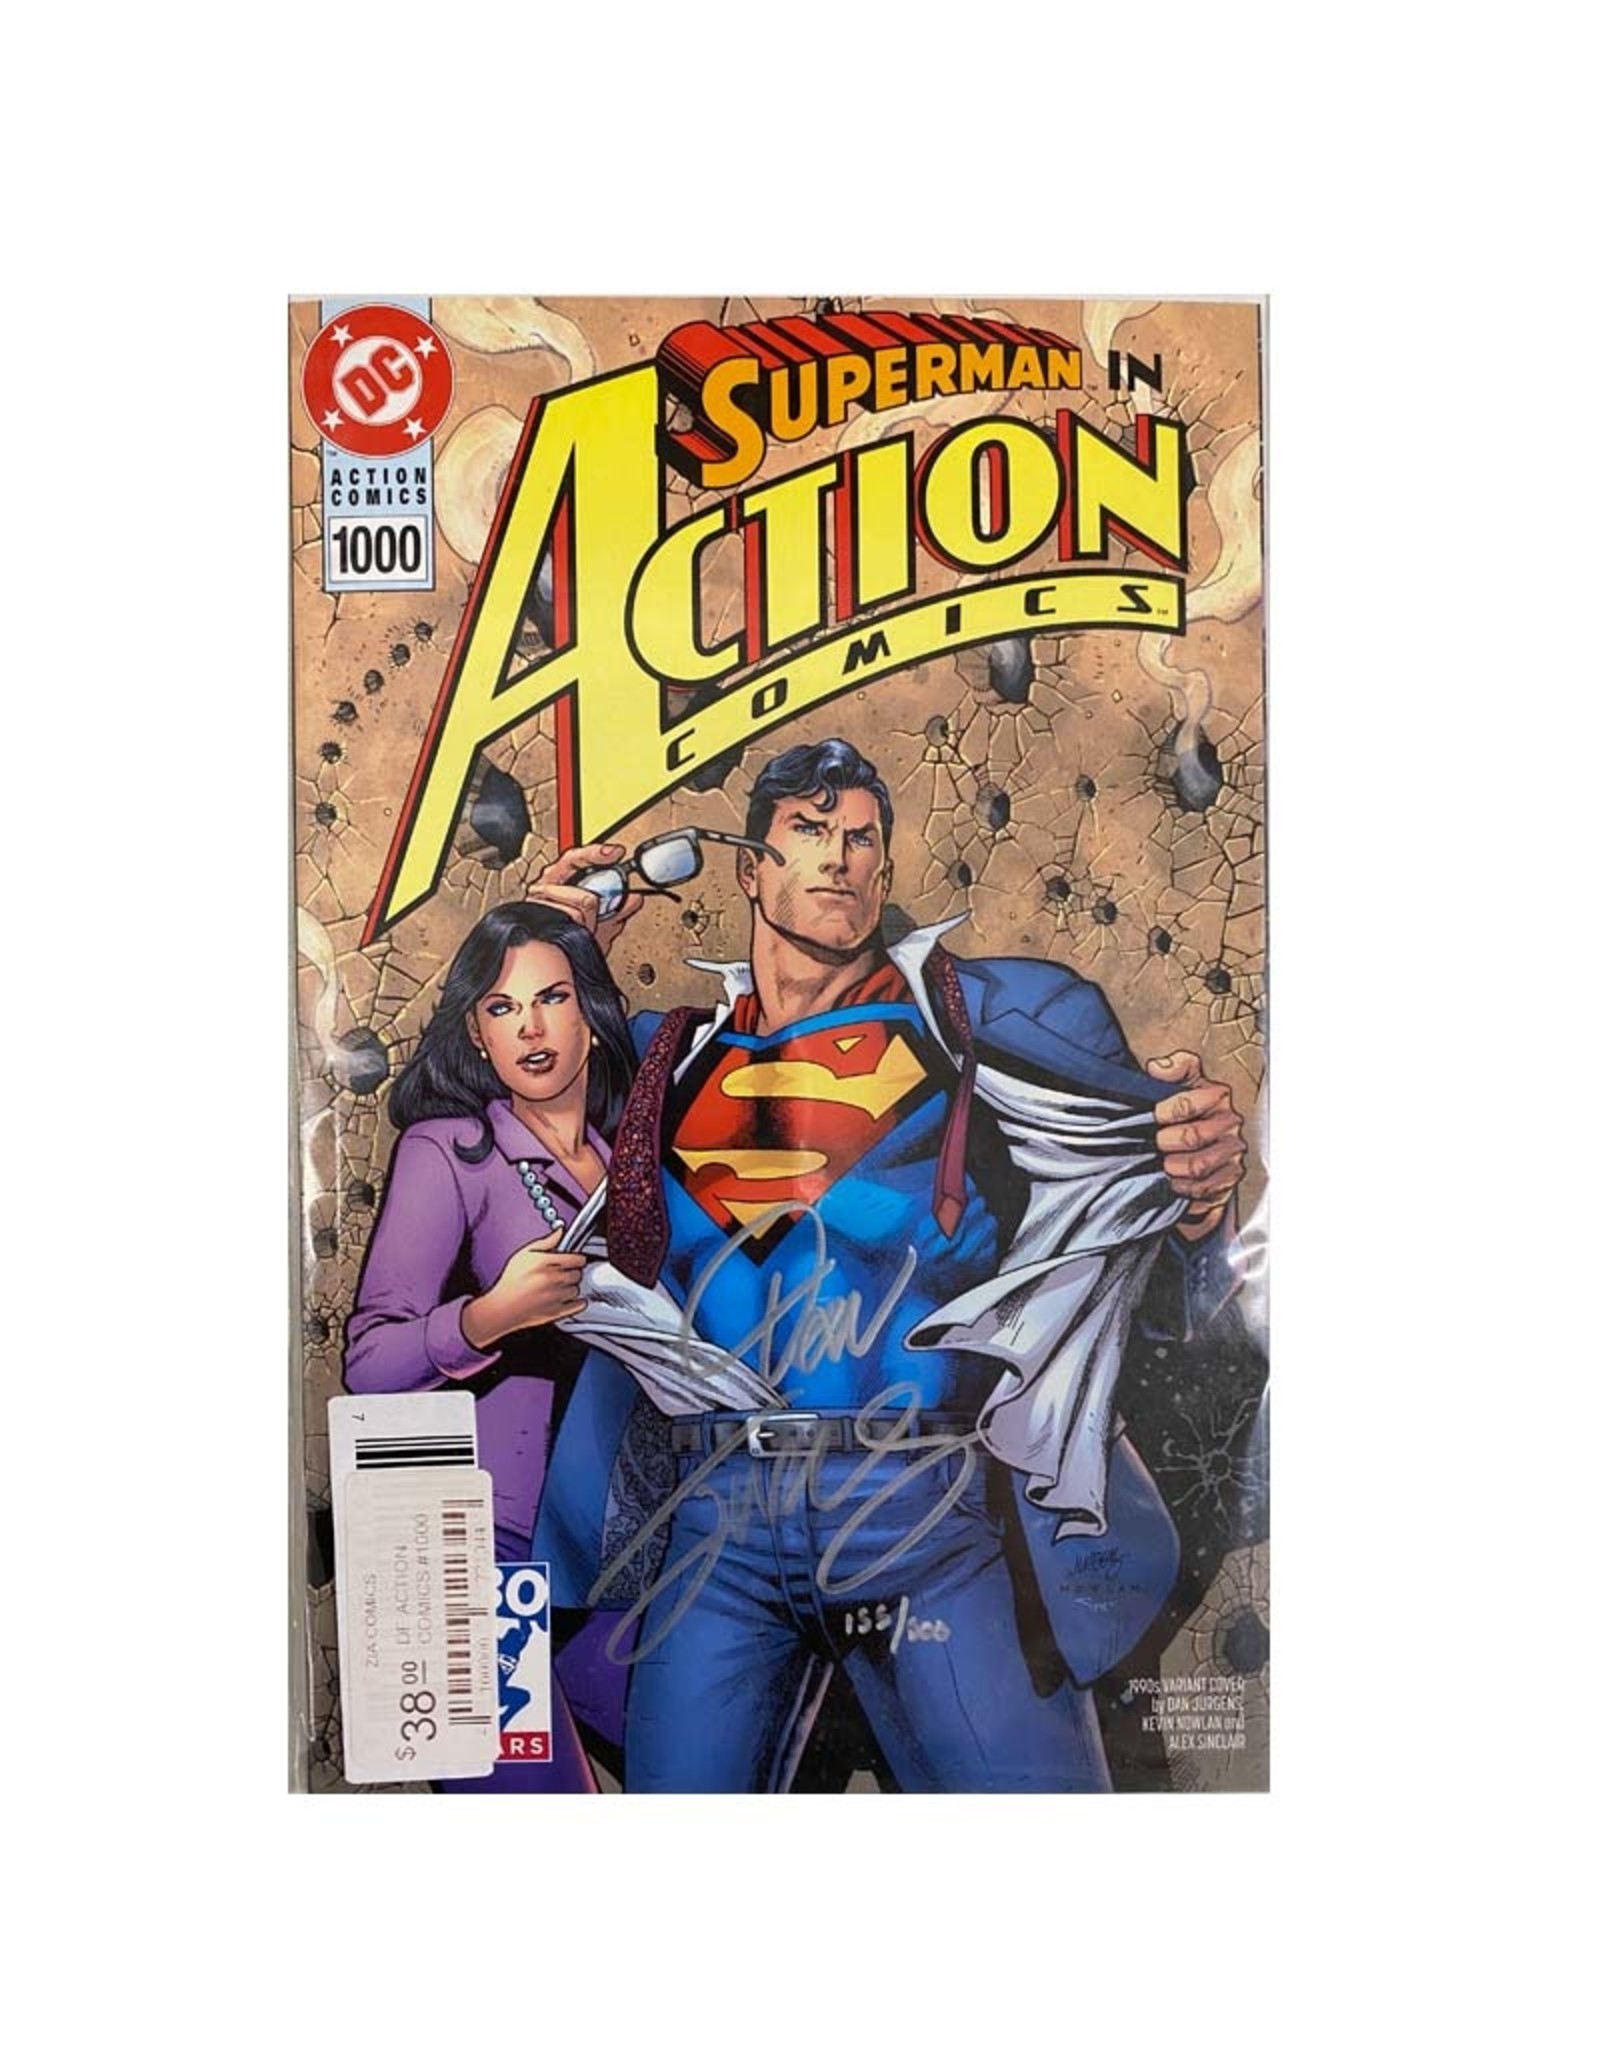 DC Comics Action Comics #1000 Signed by Dan Jurgens